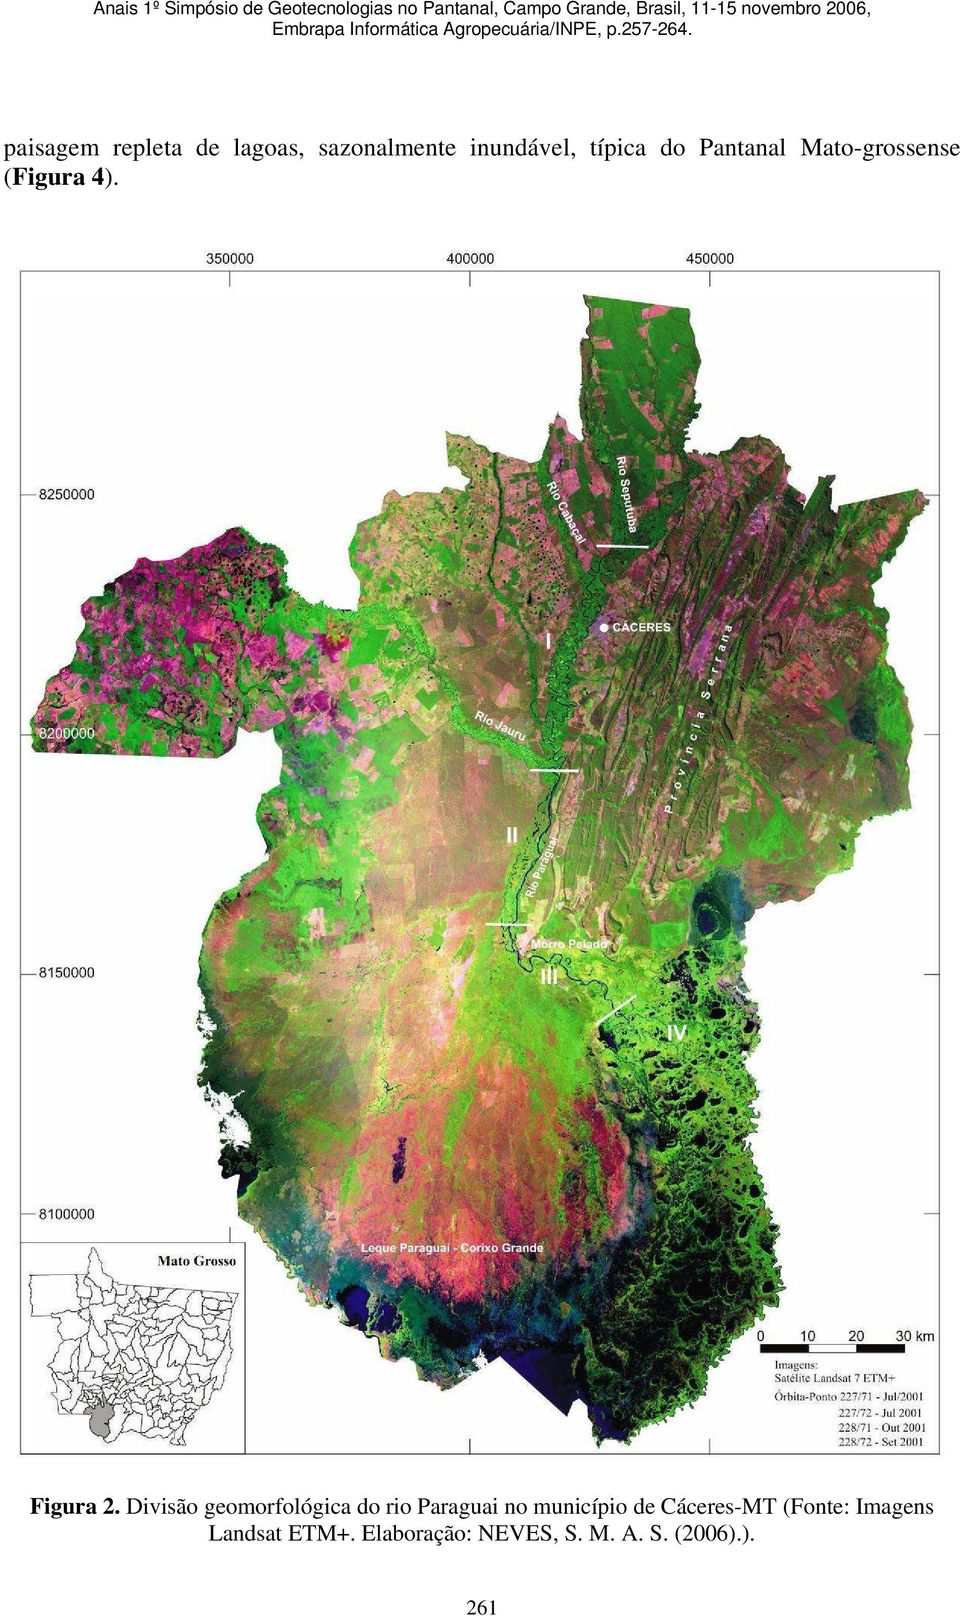 Divisão geomorfológica do rio Paraguai no município de